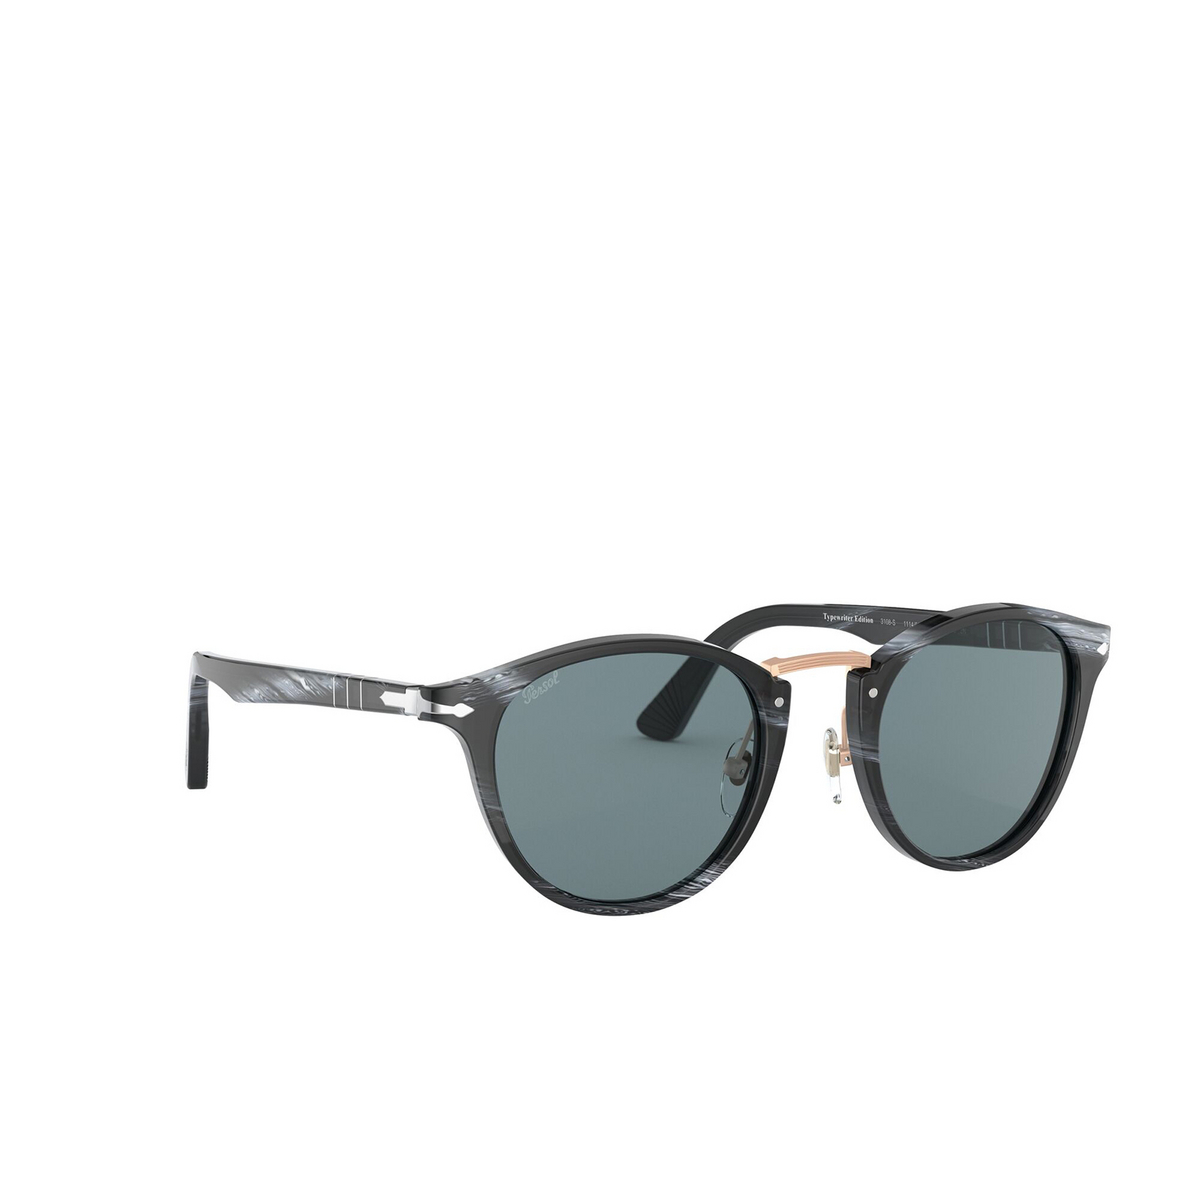 Persol® Round Sunglasses: PO3108S color Striped Black 111456 - three-quarters view.